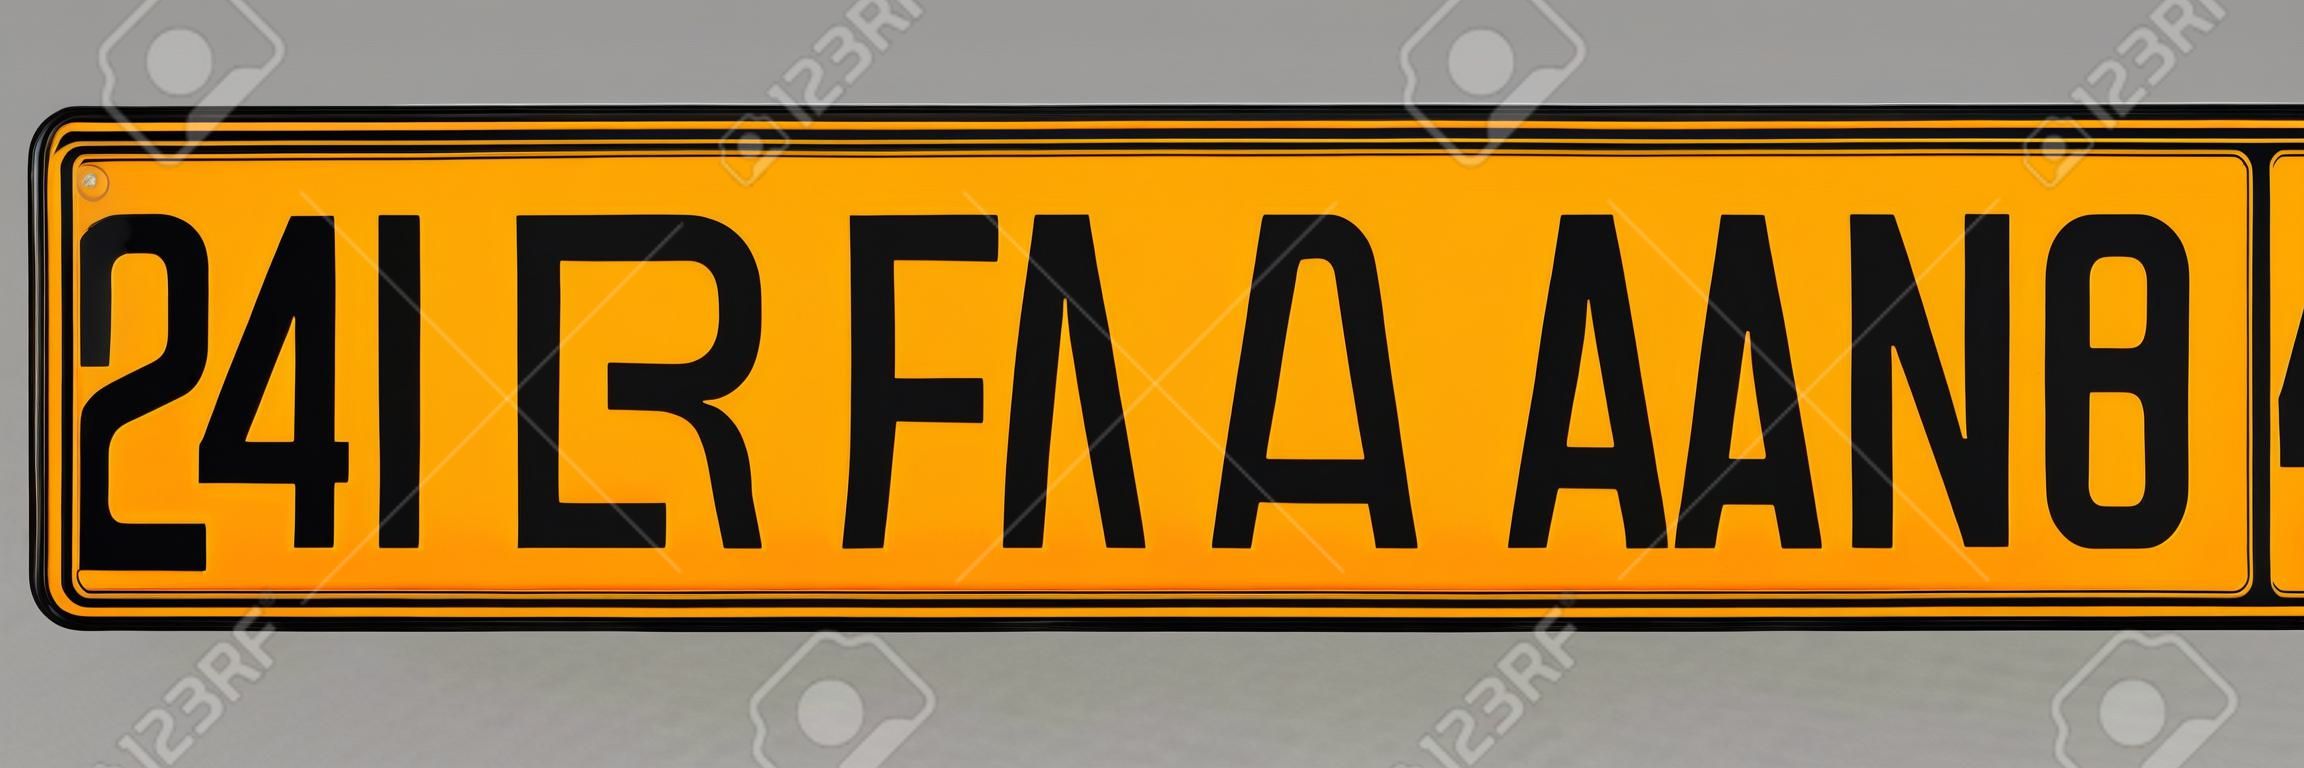 Number plate. Vehicle registration plates of Netherlands